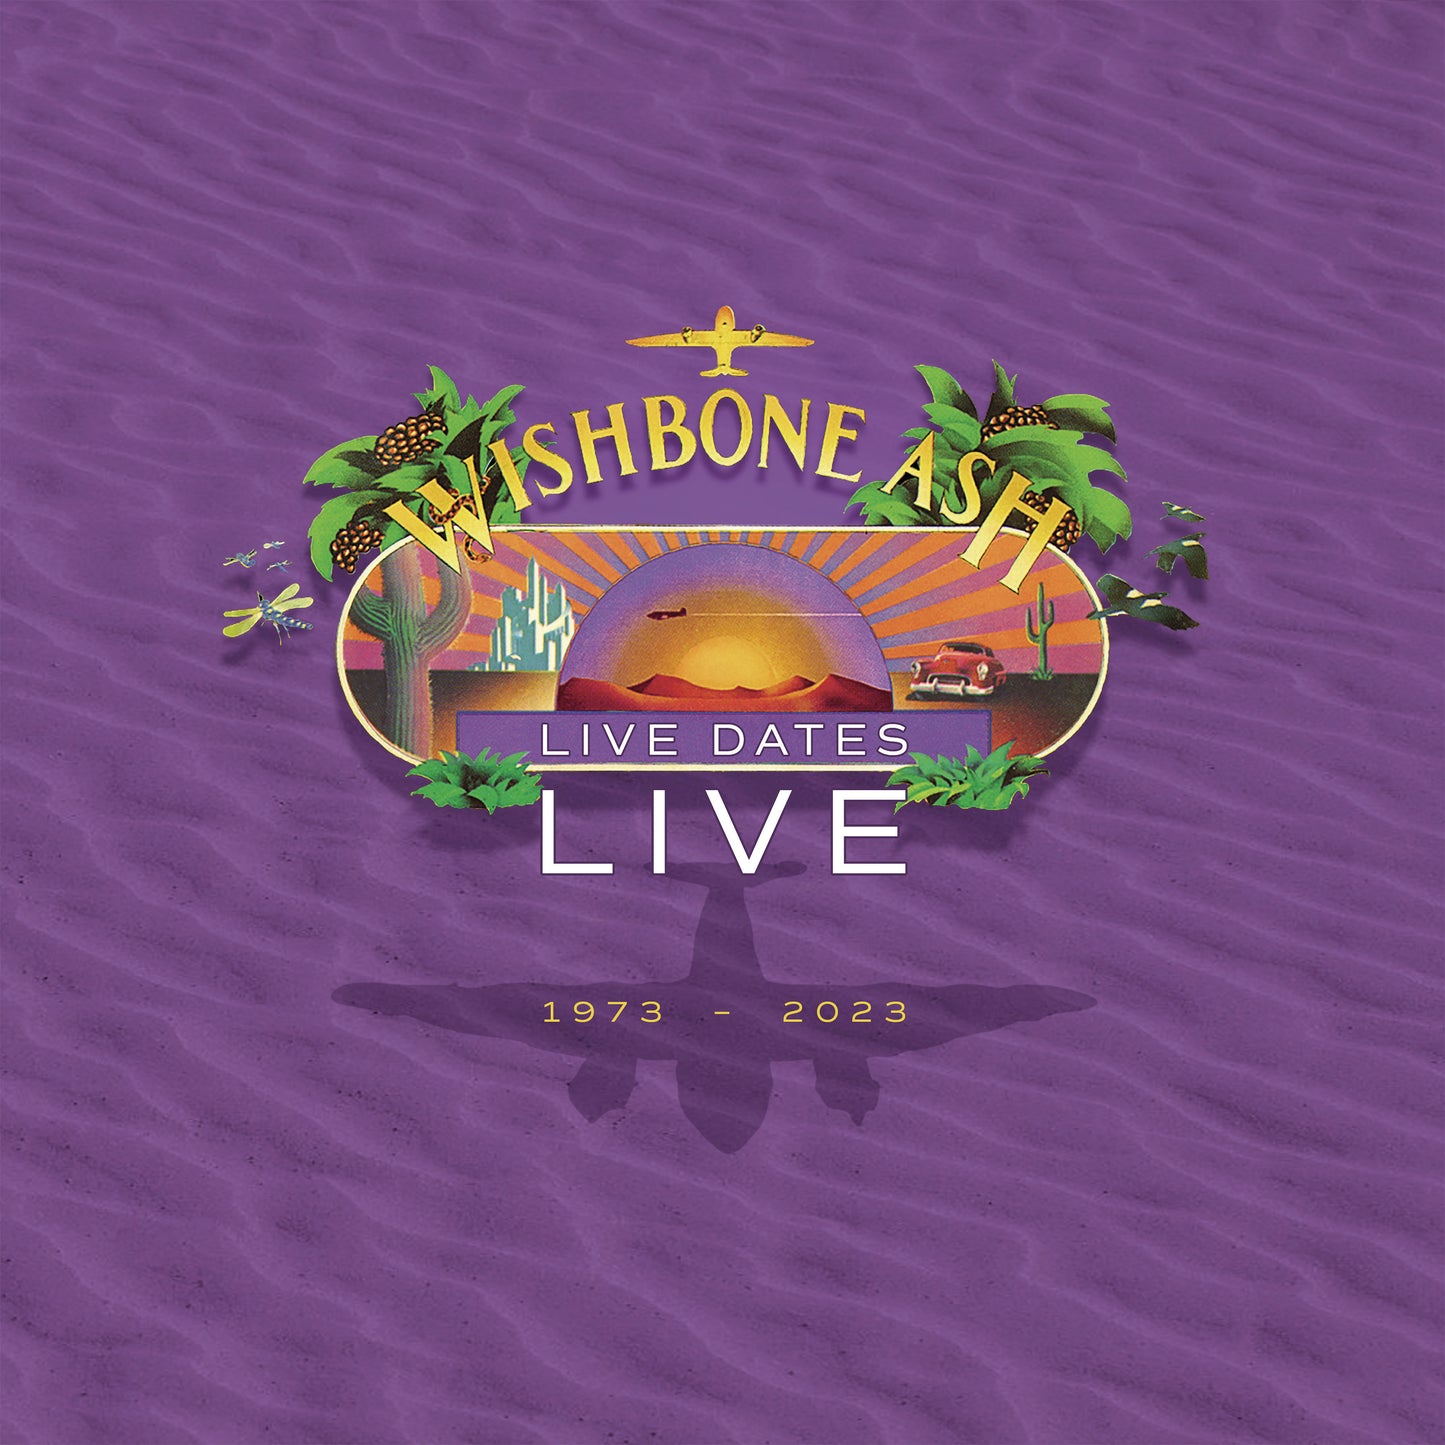 Wishbone Ash "Live Dates Live" LP (purple vinyl)